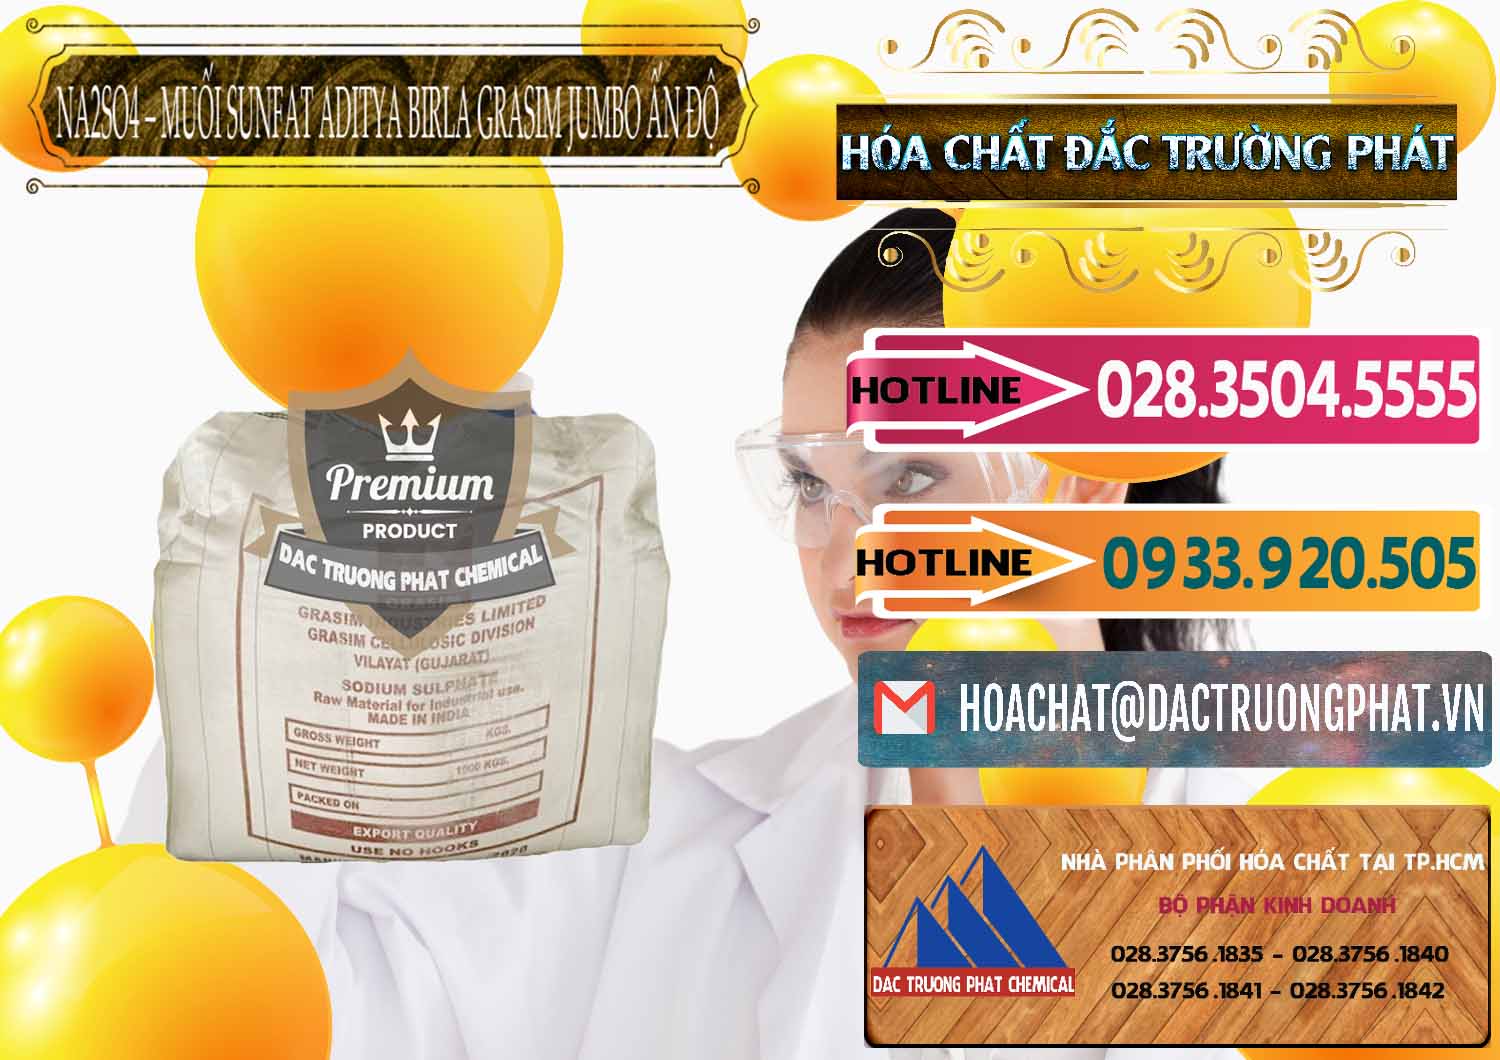 Chuyên bán & phân phối Sodium Sulphate - Muối Sunfat Na2SO4 Jumbo Bành Aditya Birla Grasim Ấn Độ India - 0357 - Đơn vị kinh doanh _ cung cấp hóa chất tại TP.HCM - dactruongphat.vn